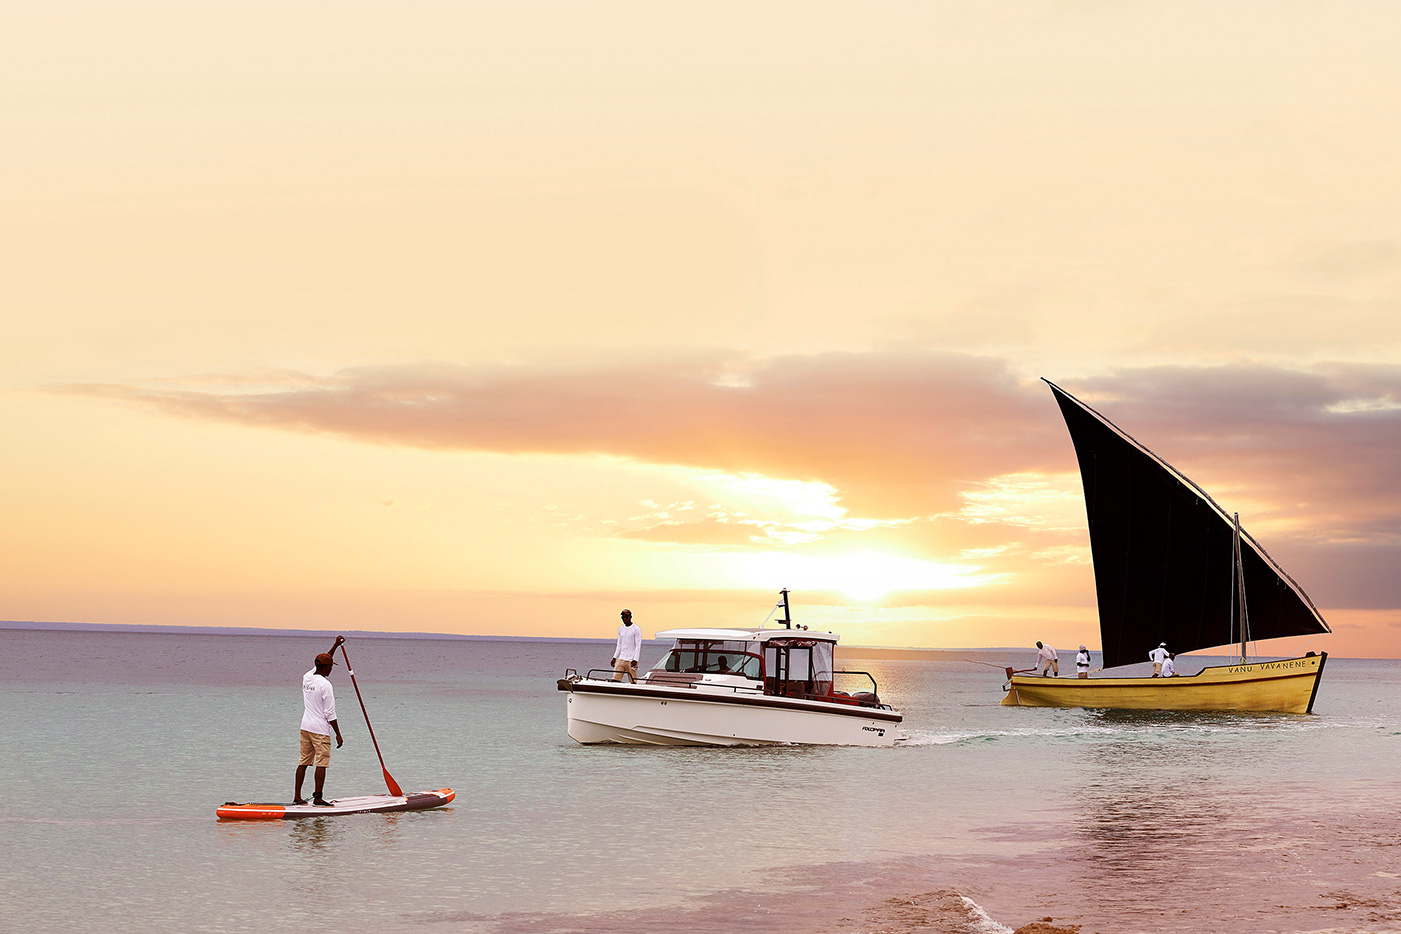 Luxusresort-private Bungalows mit eigenem Strand und Pool-Mosambik Benguerra Island